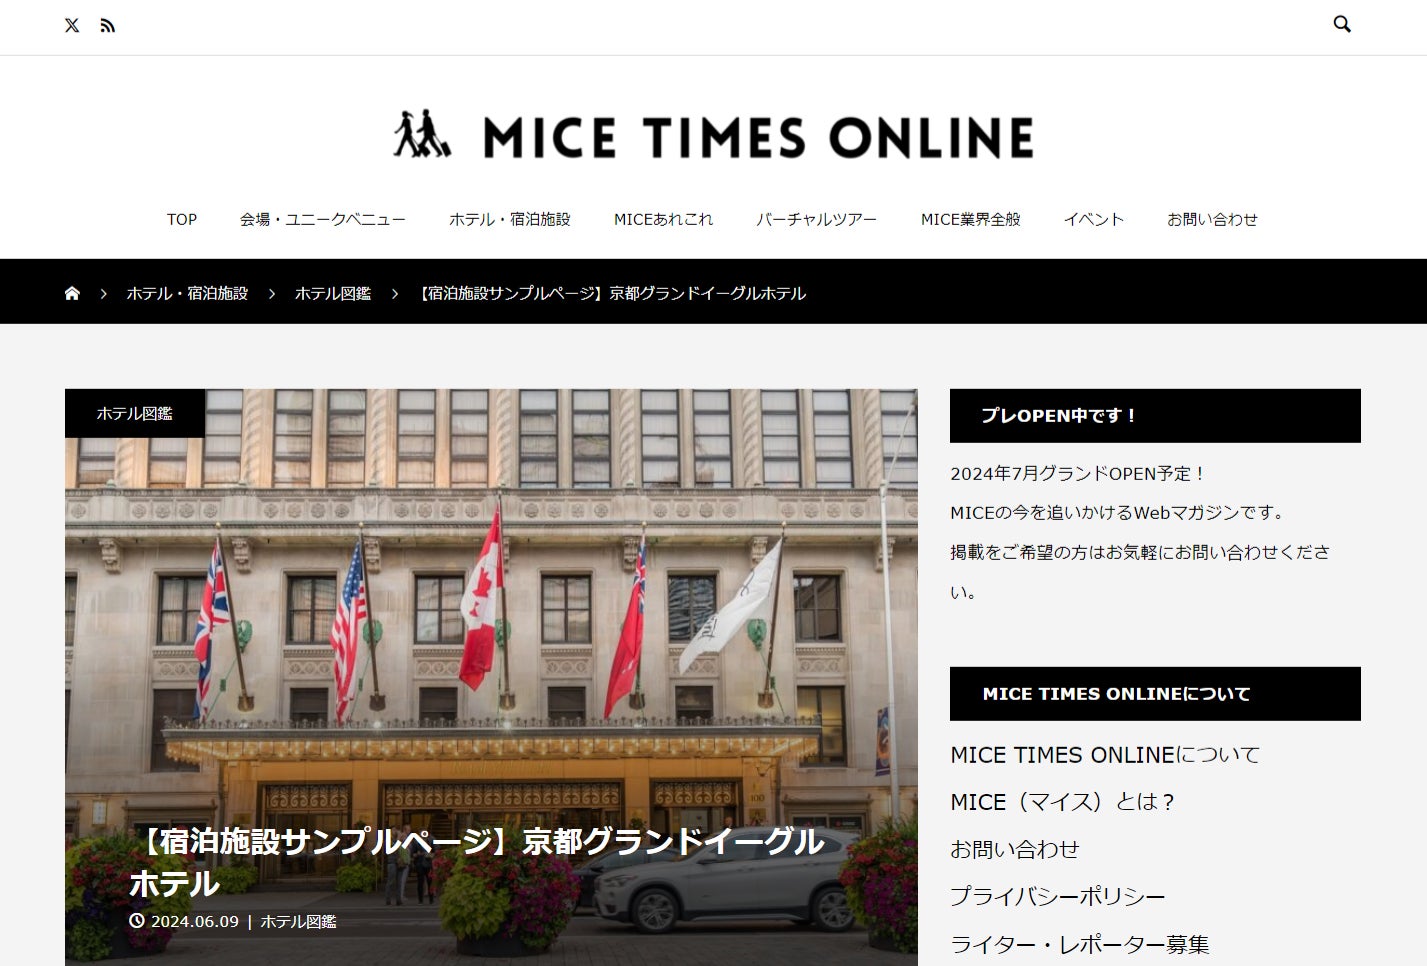 「MICEの今を追いかける」をテーマにMICE情報Webマガジン【MICE TIMES ONLINE】（マイス タイムズ オンライン）を新創刊